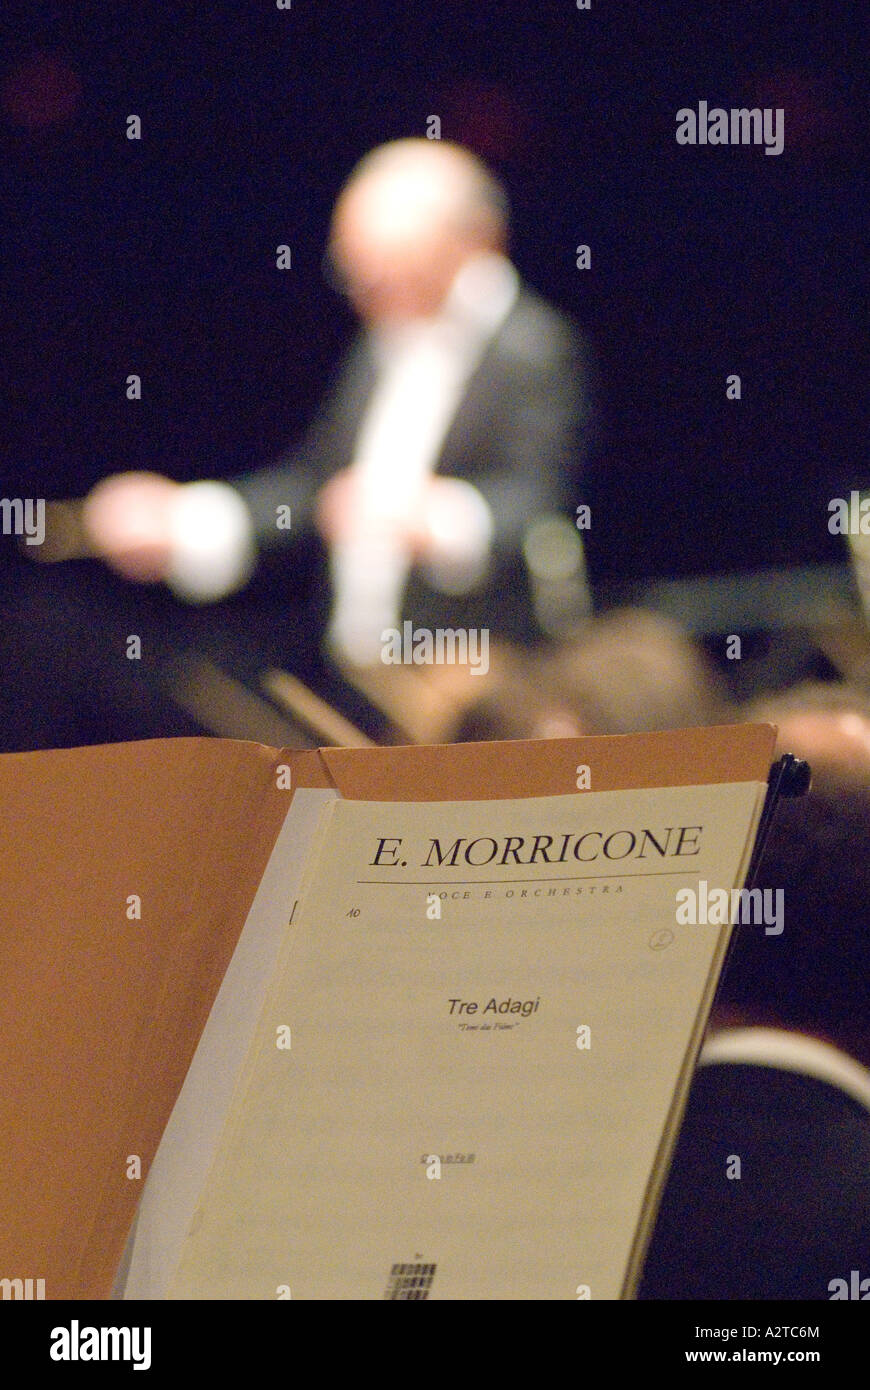 Der italienische Filmkomponist Ennio Morricone (10. November 1928-6. Juli 2020) im Konzert Hammersmith Apollo, London, UK, Dezember 2006. Stockfoto